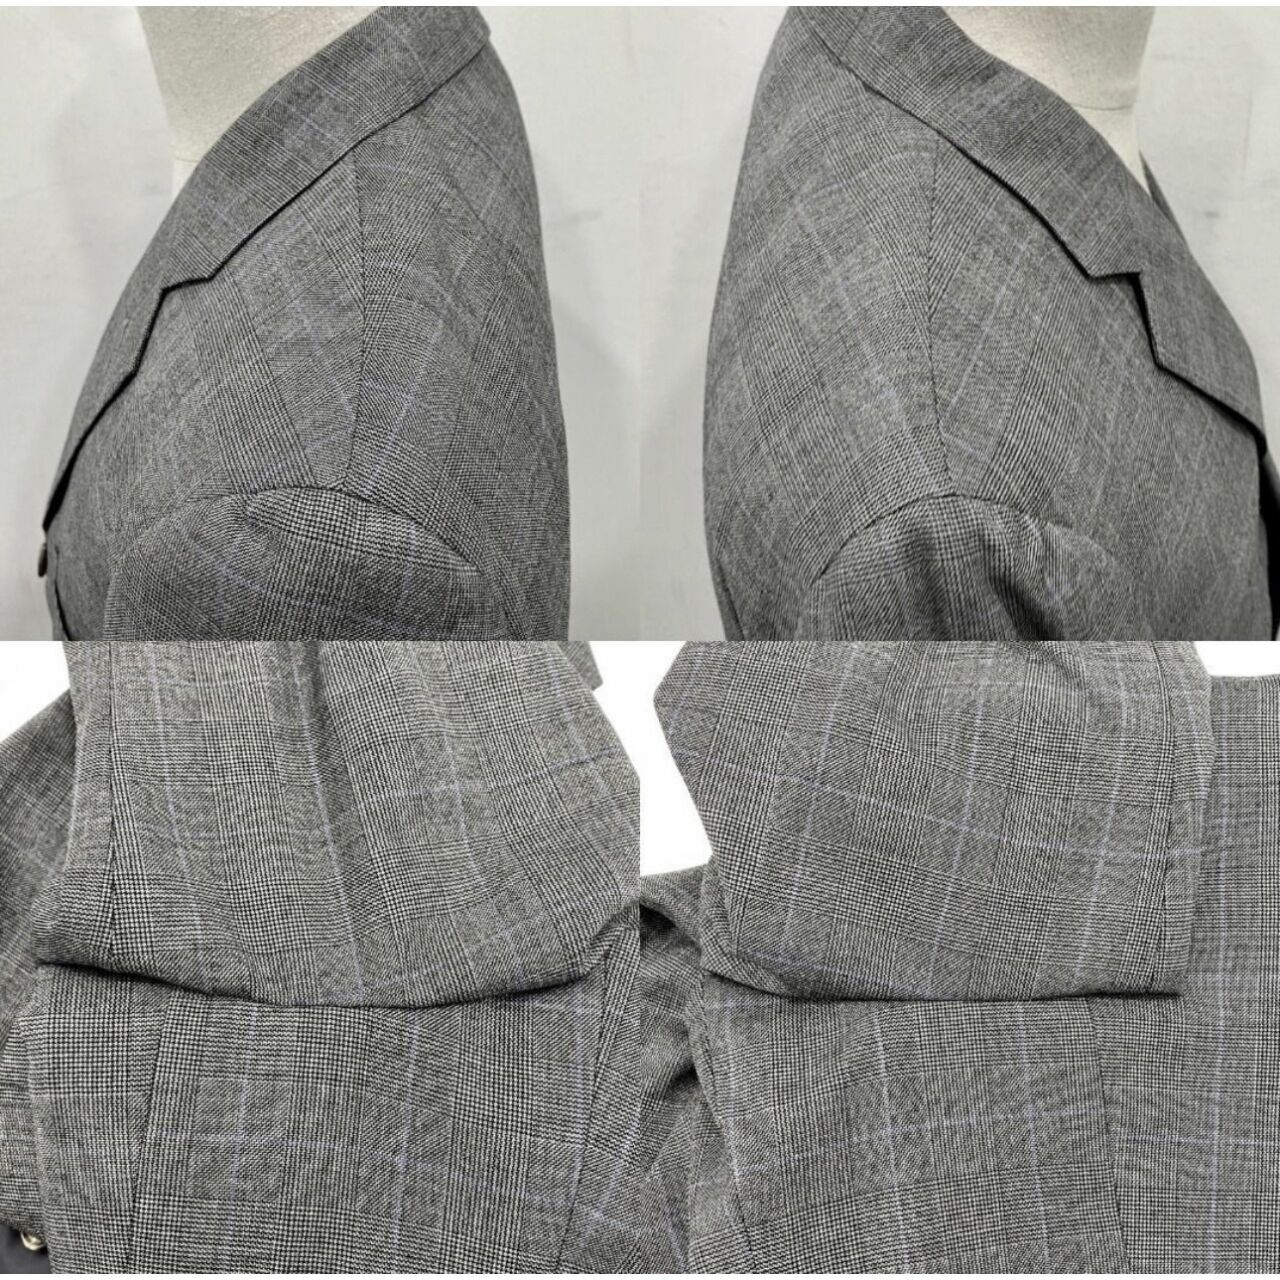 Polo Ralph Lauren Grey Blazer Pants Suit Set Two Piece